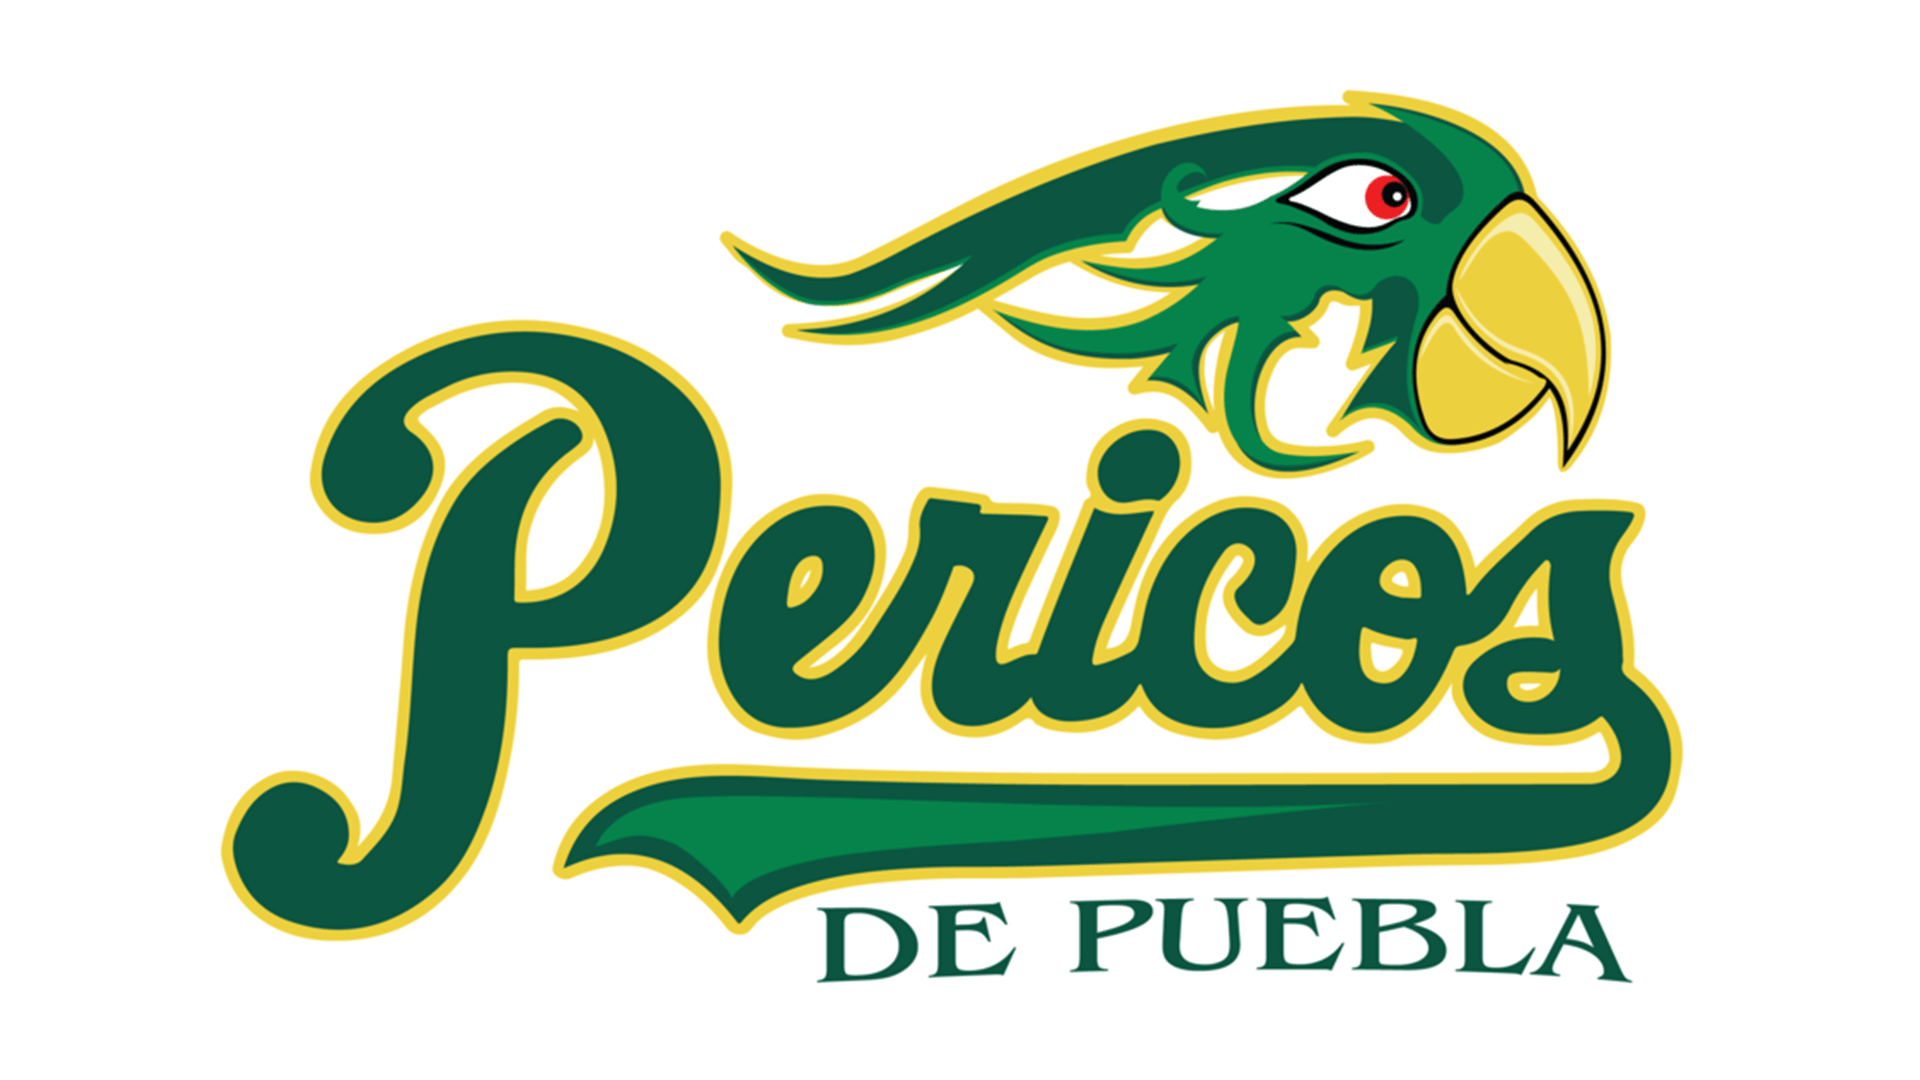 Puebla Logo - Meaning Puebla Pericos logo and symbol. history and evolution